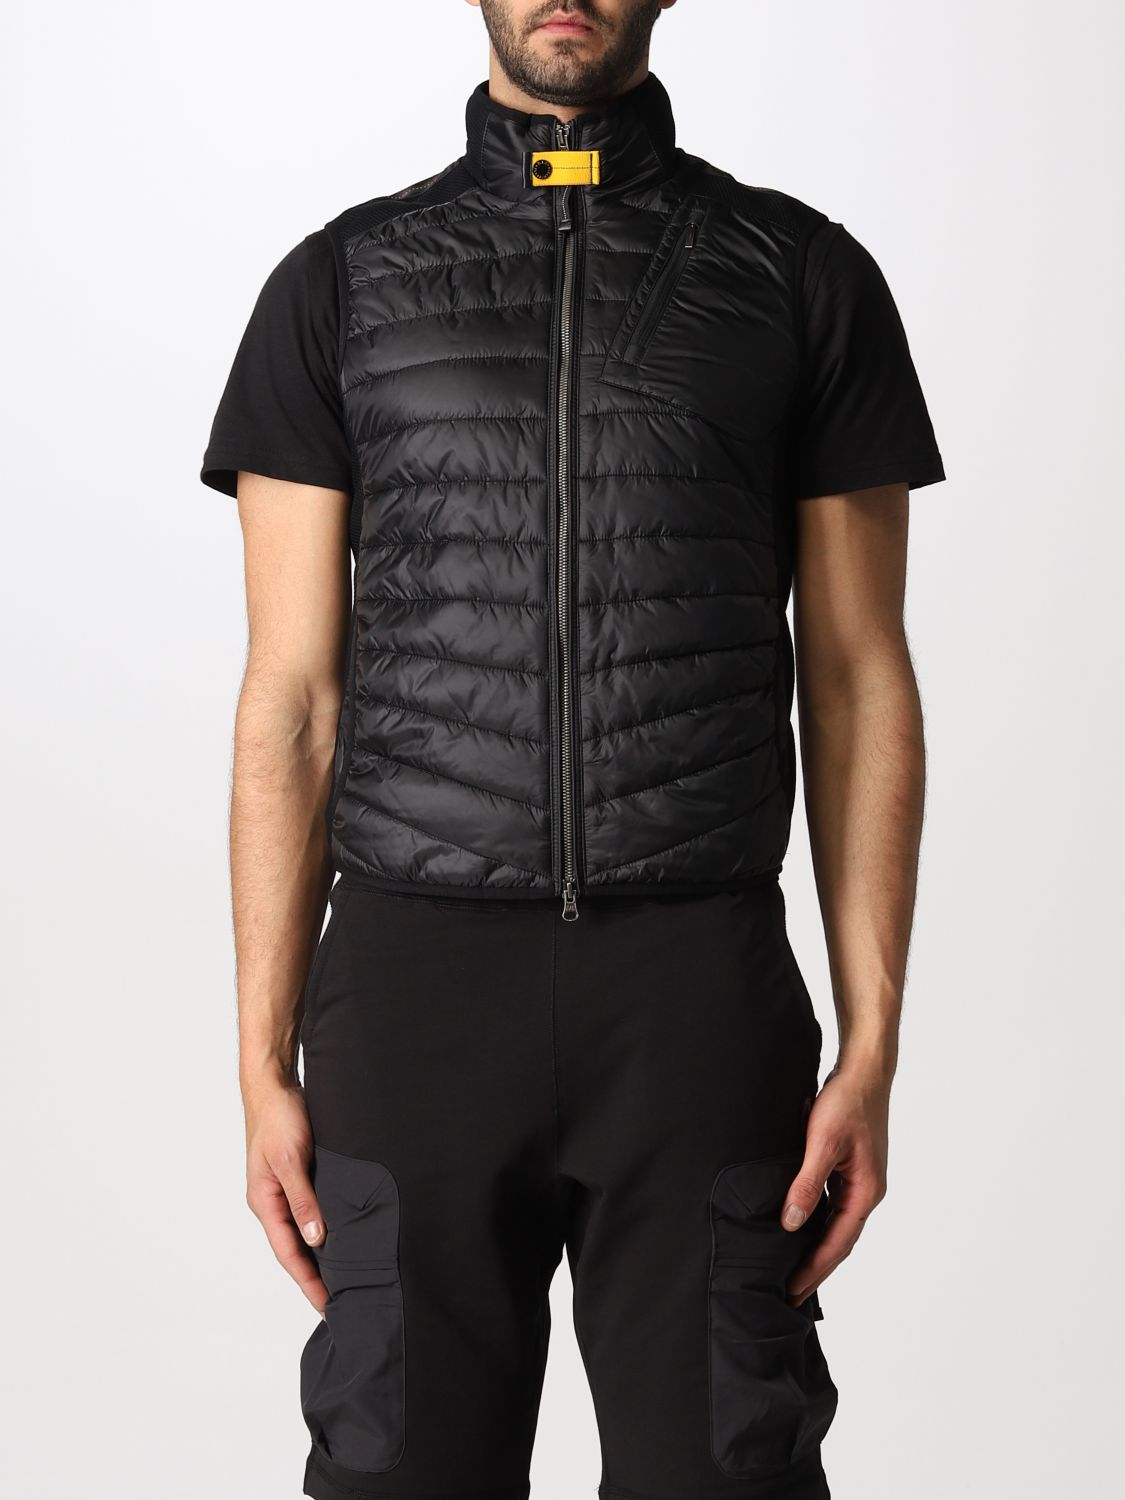 PARAJUMPERS: suit vest for man - Black | Parajumpers suit vest ...